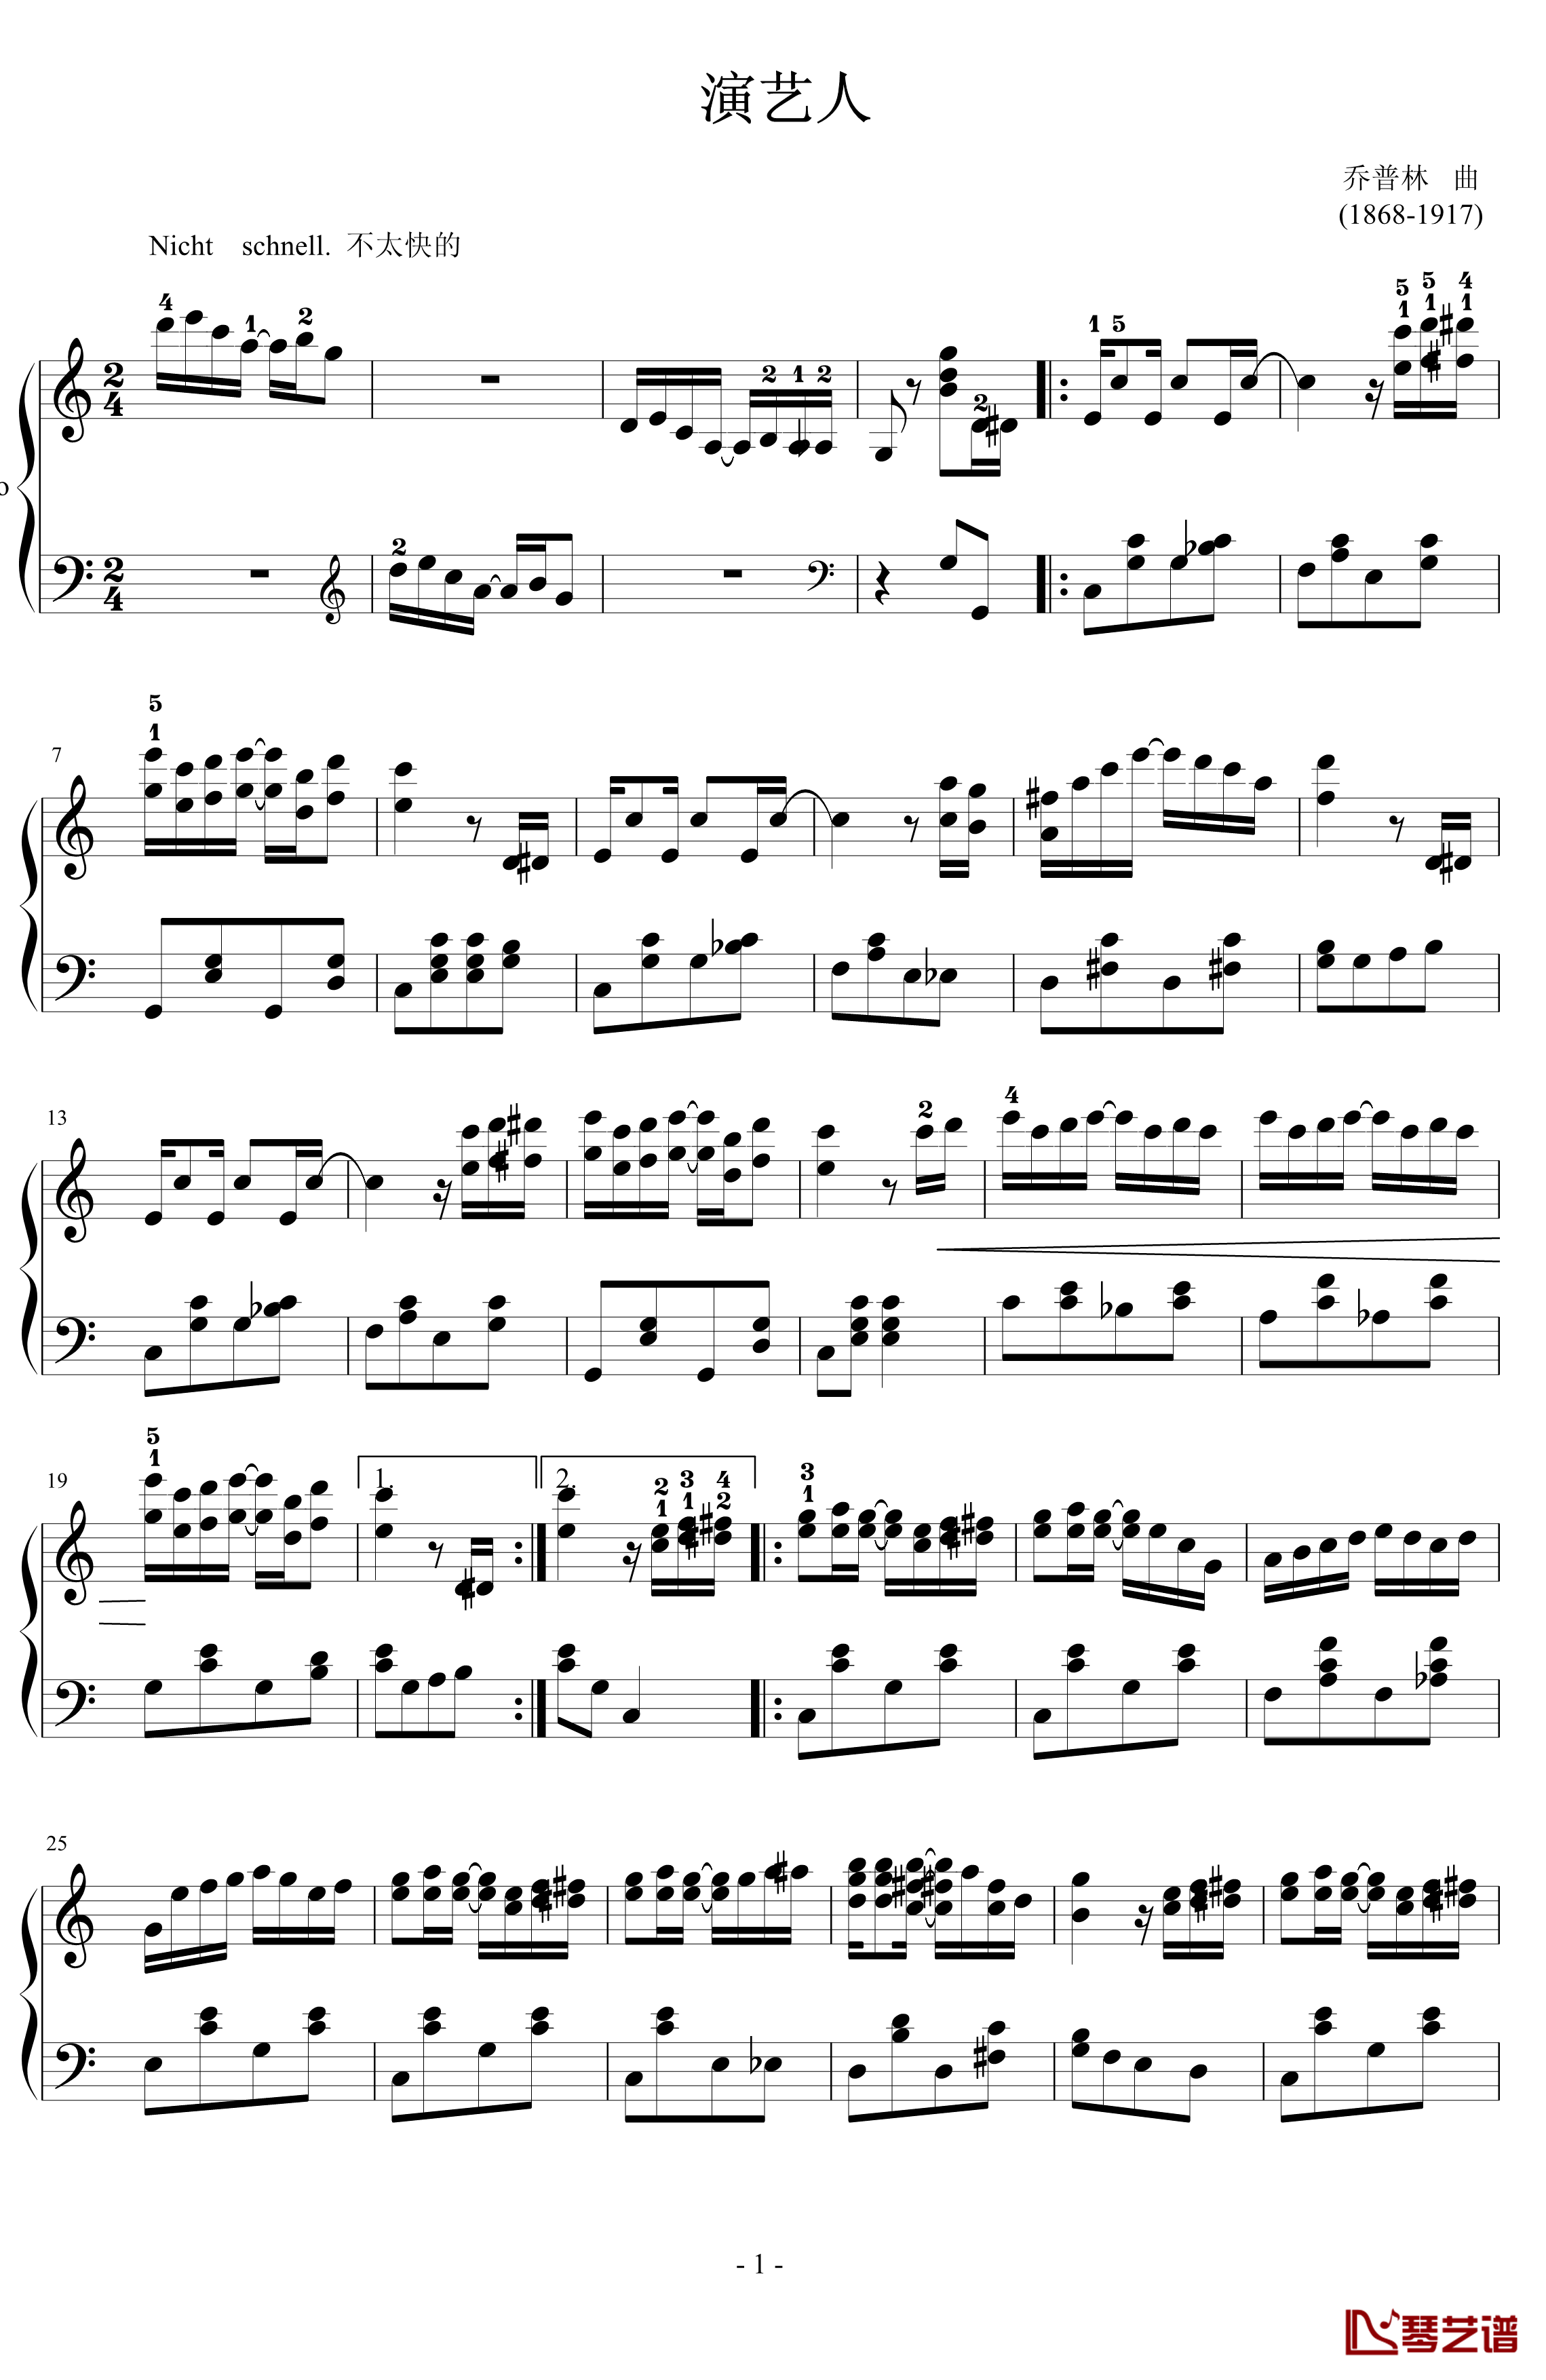 演艺人钢琴谱-简化版-乔普林1